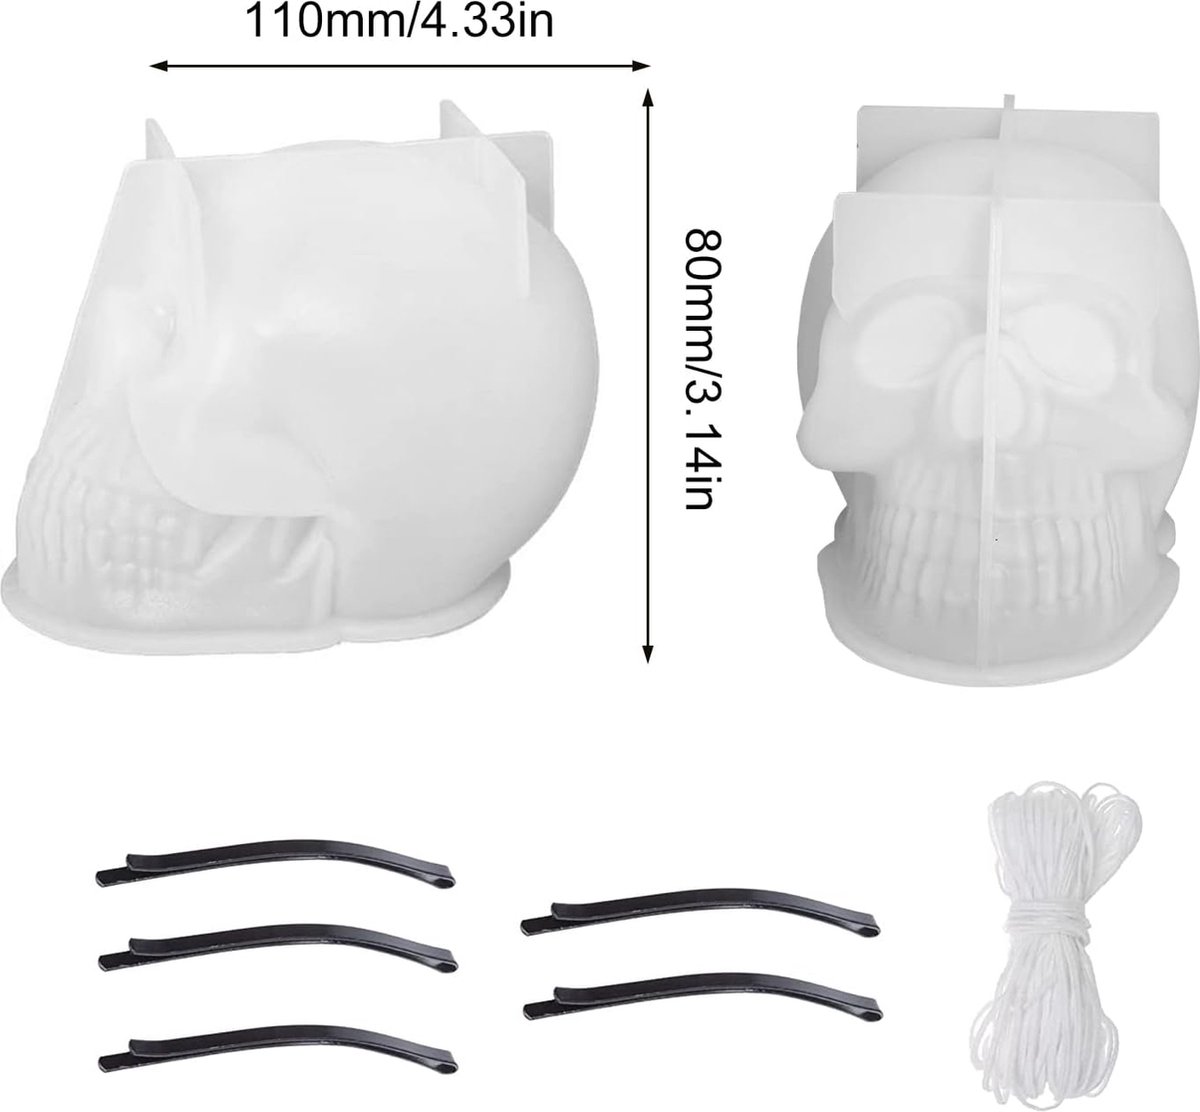 8 stuks schedel siliconen mal set, Asaisimg 3D schedel kaars mallen, schedel schimmel voor epoxyhars, schedel kaars mallen voor kaars maken, epoxy, zeep, Halloween kaarsen